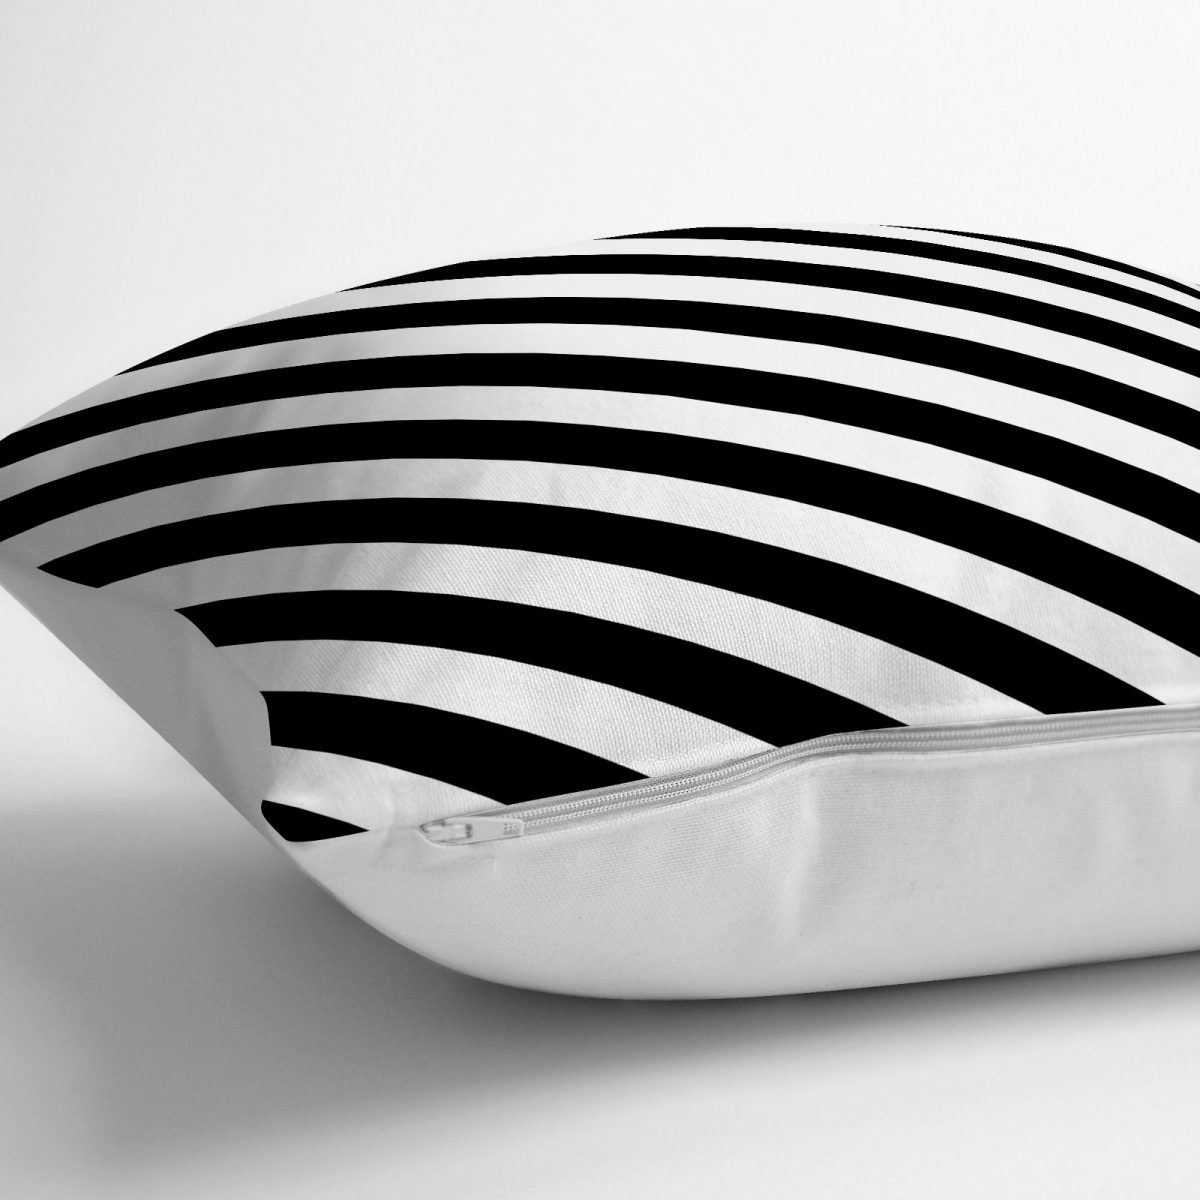 Siyah Beyaz Şeritli Dijital Baskılı Yer Minderi - 70 x 70 cm Realhomes